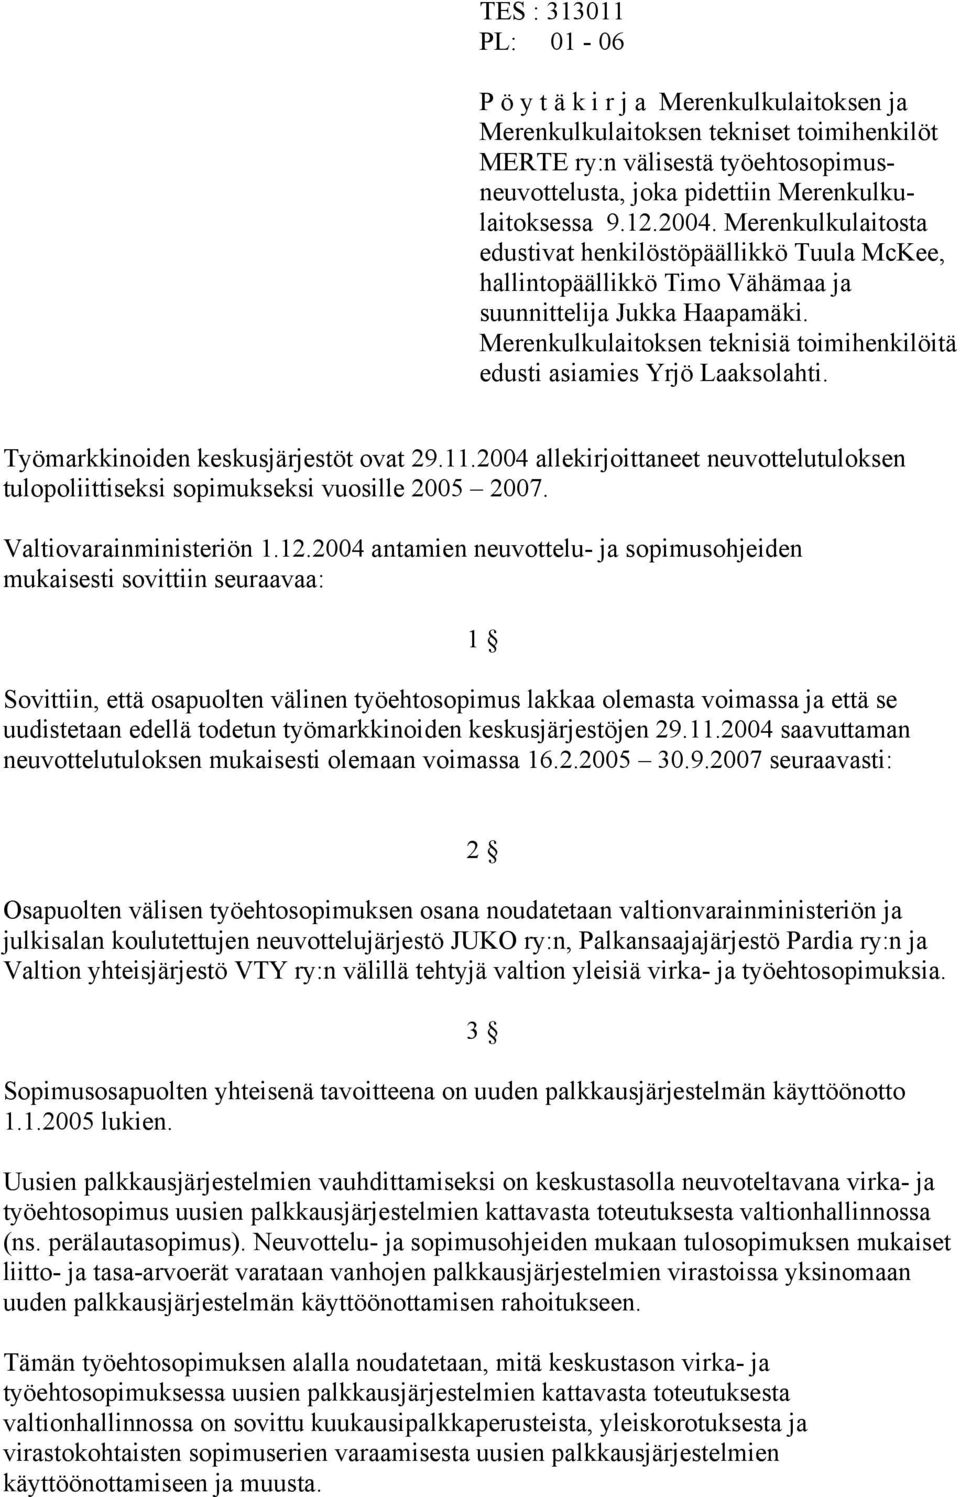 Merenkulkulaitoksen teknisiä toimihenkilöitä edusti asiamies Yrjö Laaksolahti. Työmarkkinoiden keskusjärjestöt ovat 29.11.